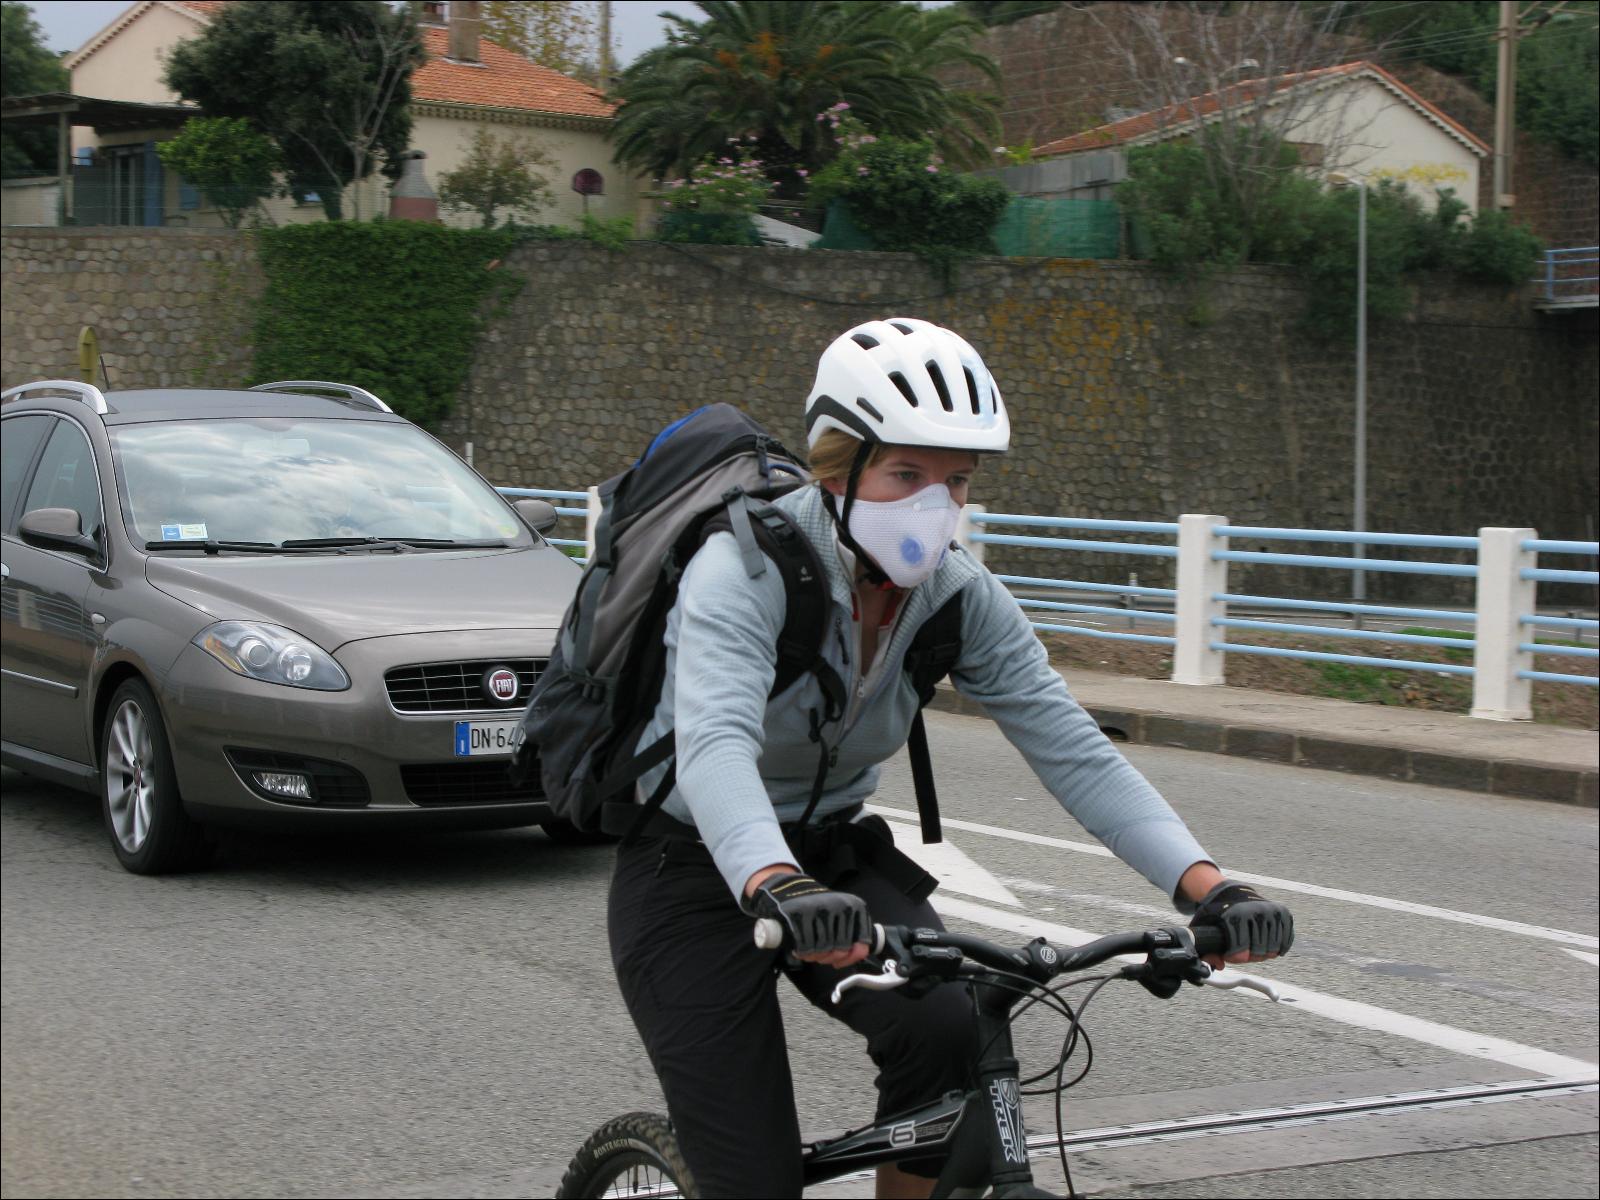 Filtre à charbon actif P2,5 Masque de sport - Chine Masque d'équitation,  cyclisme